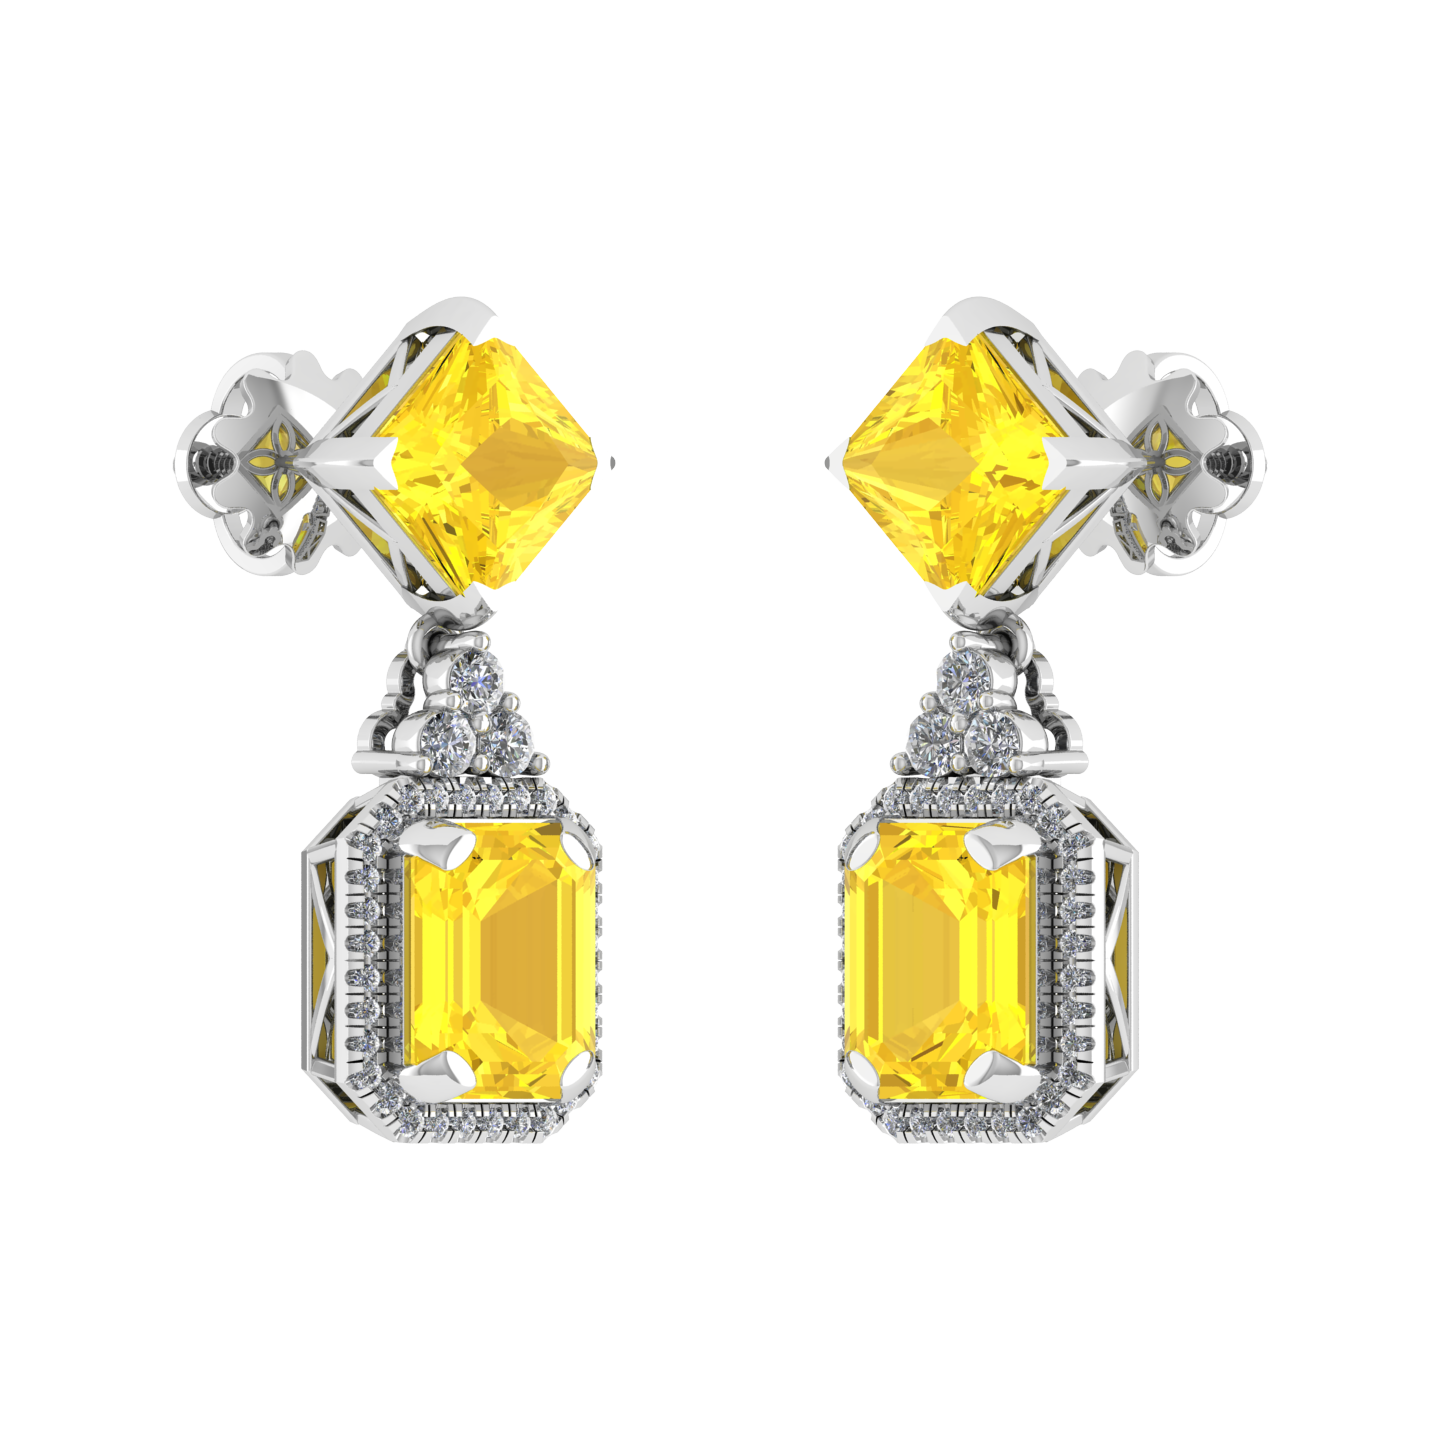 Elegant Design Diamond Gold Earrings - JN030609-ER70